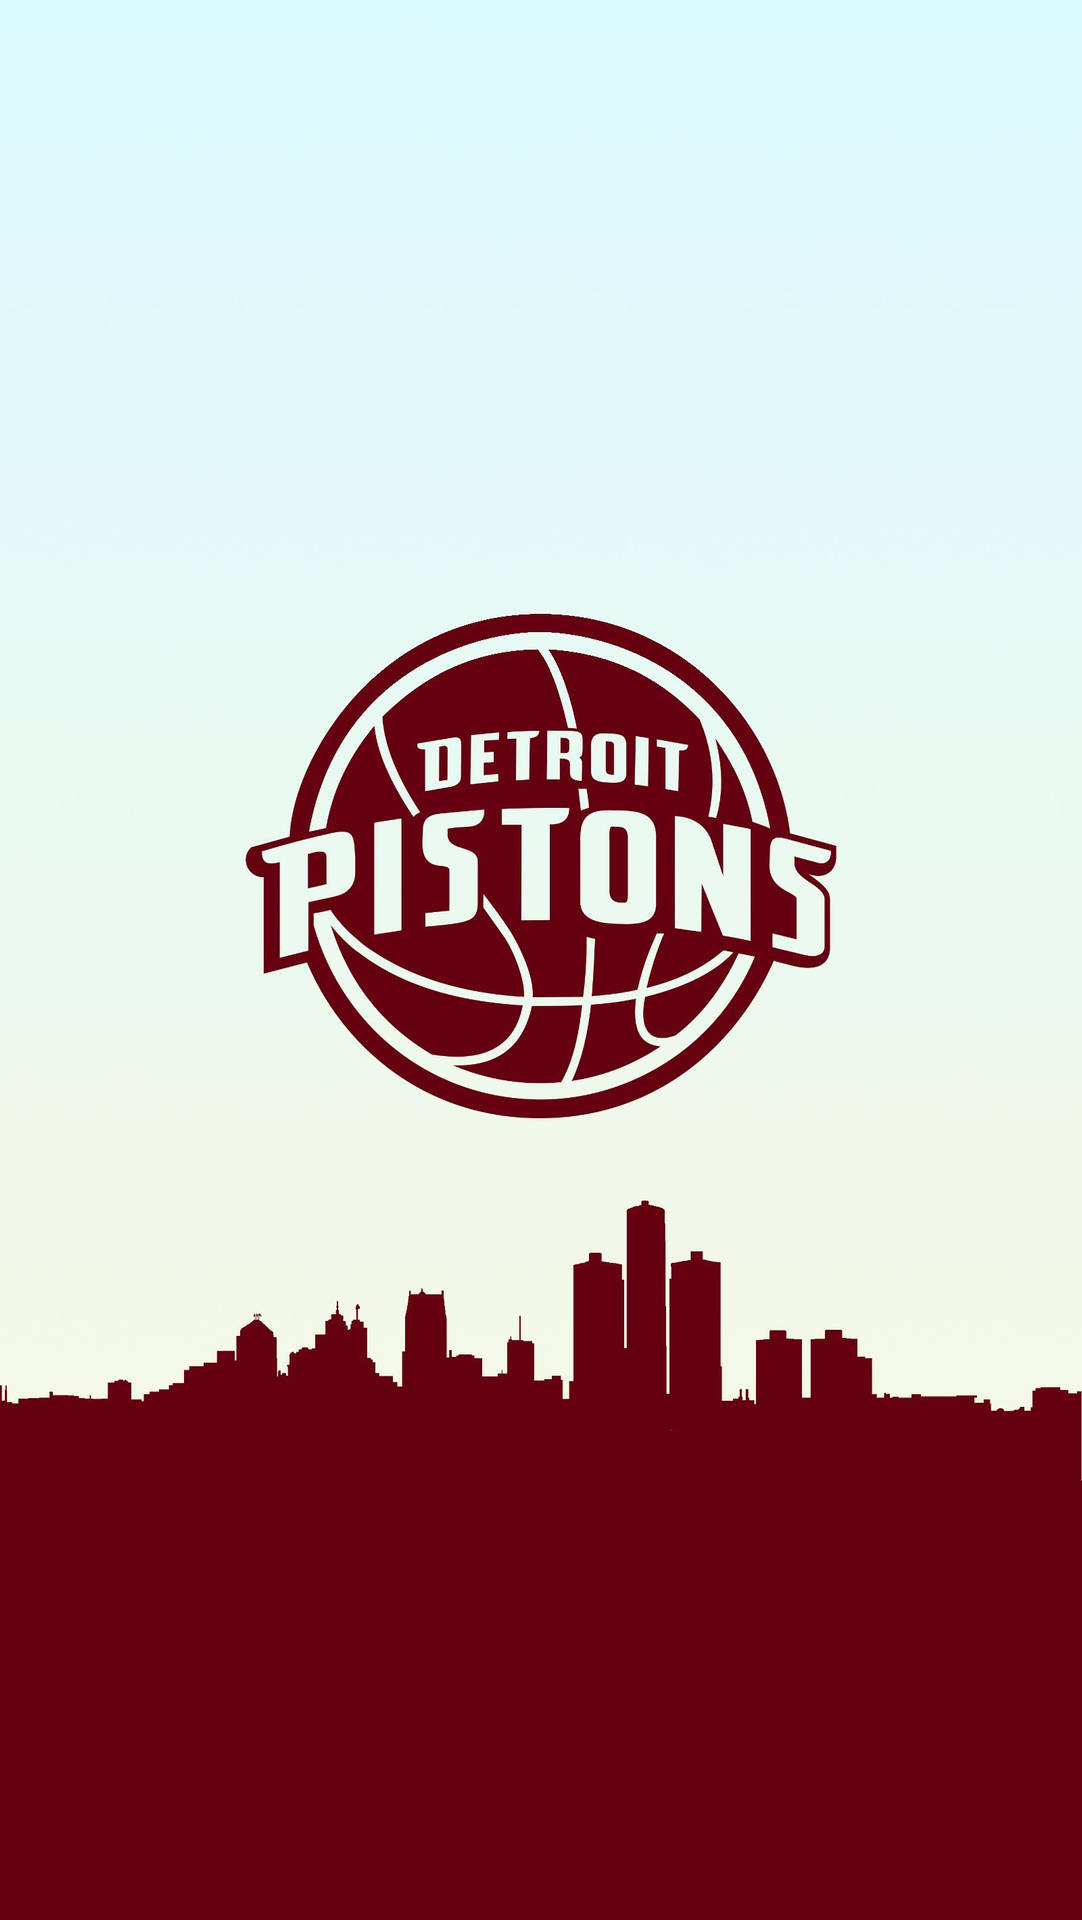 Detroit Pistons Reddish Brown Logo Background